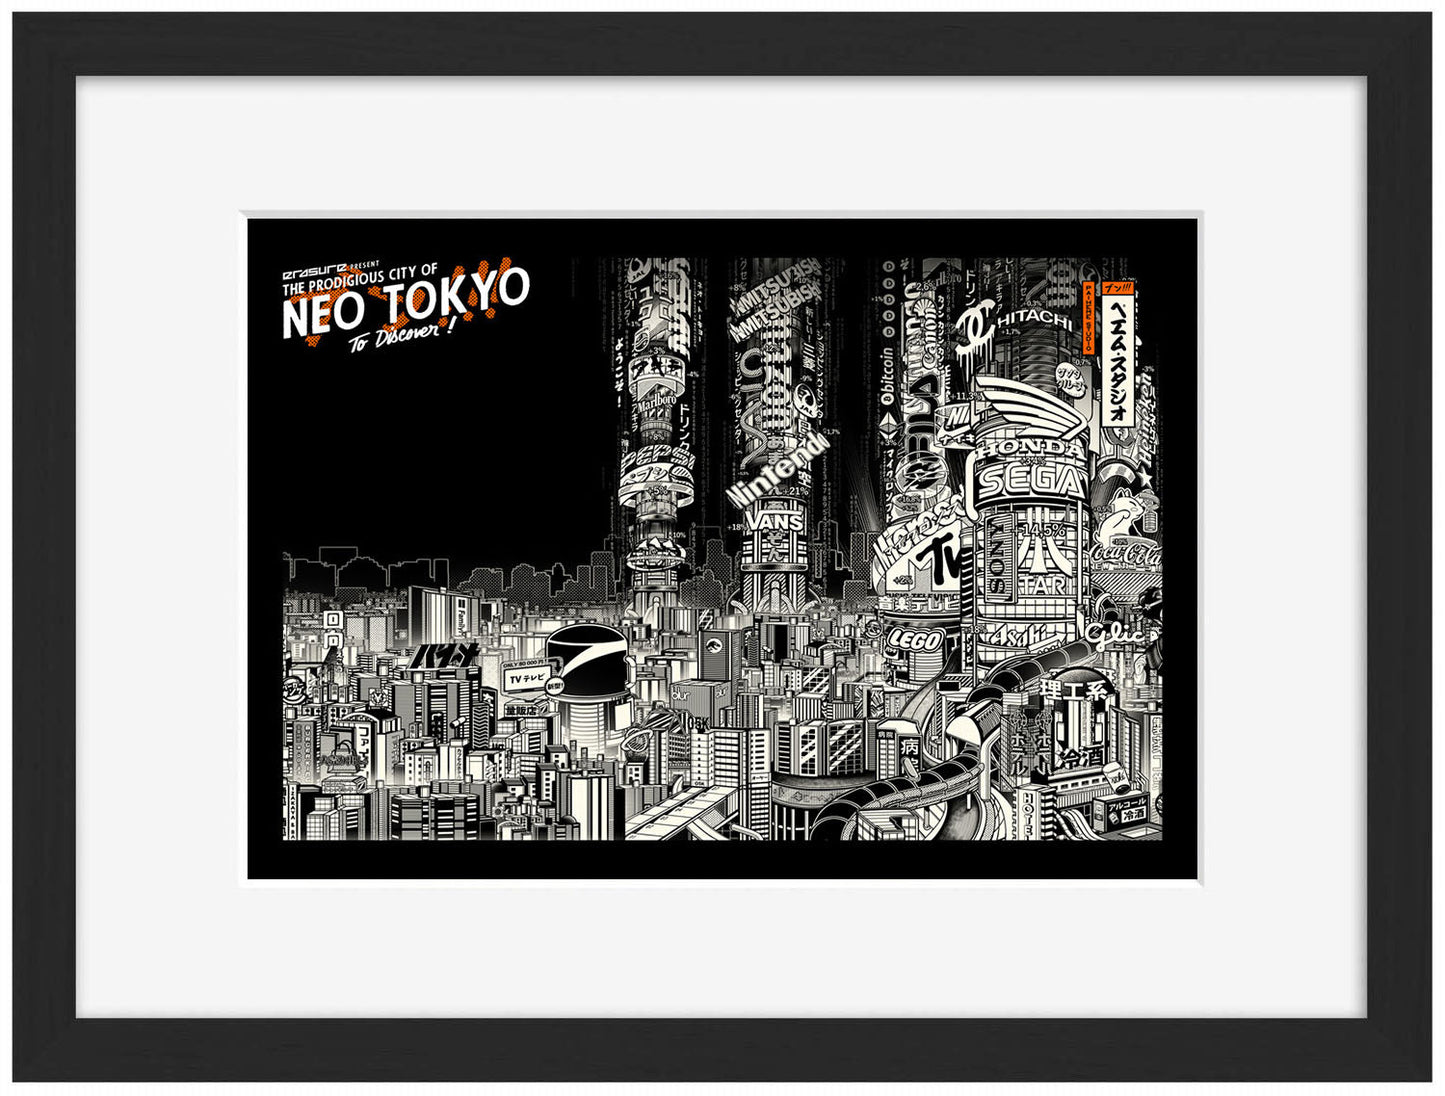 Neo Tokyo-paiheme-studio, print-Framed Print-30 x 40 cm-BLUE SHAKER